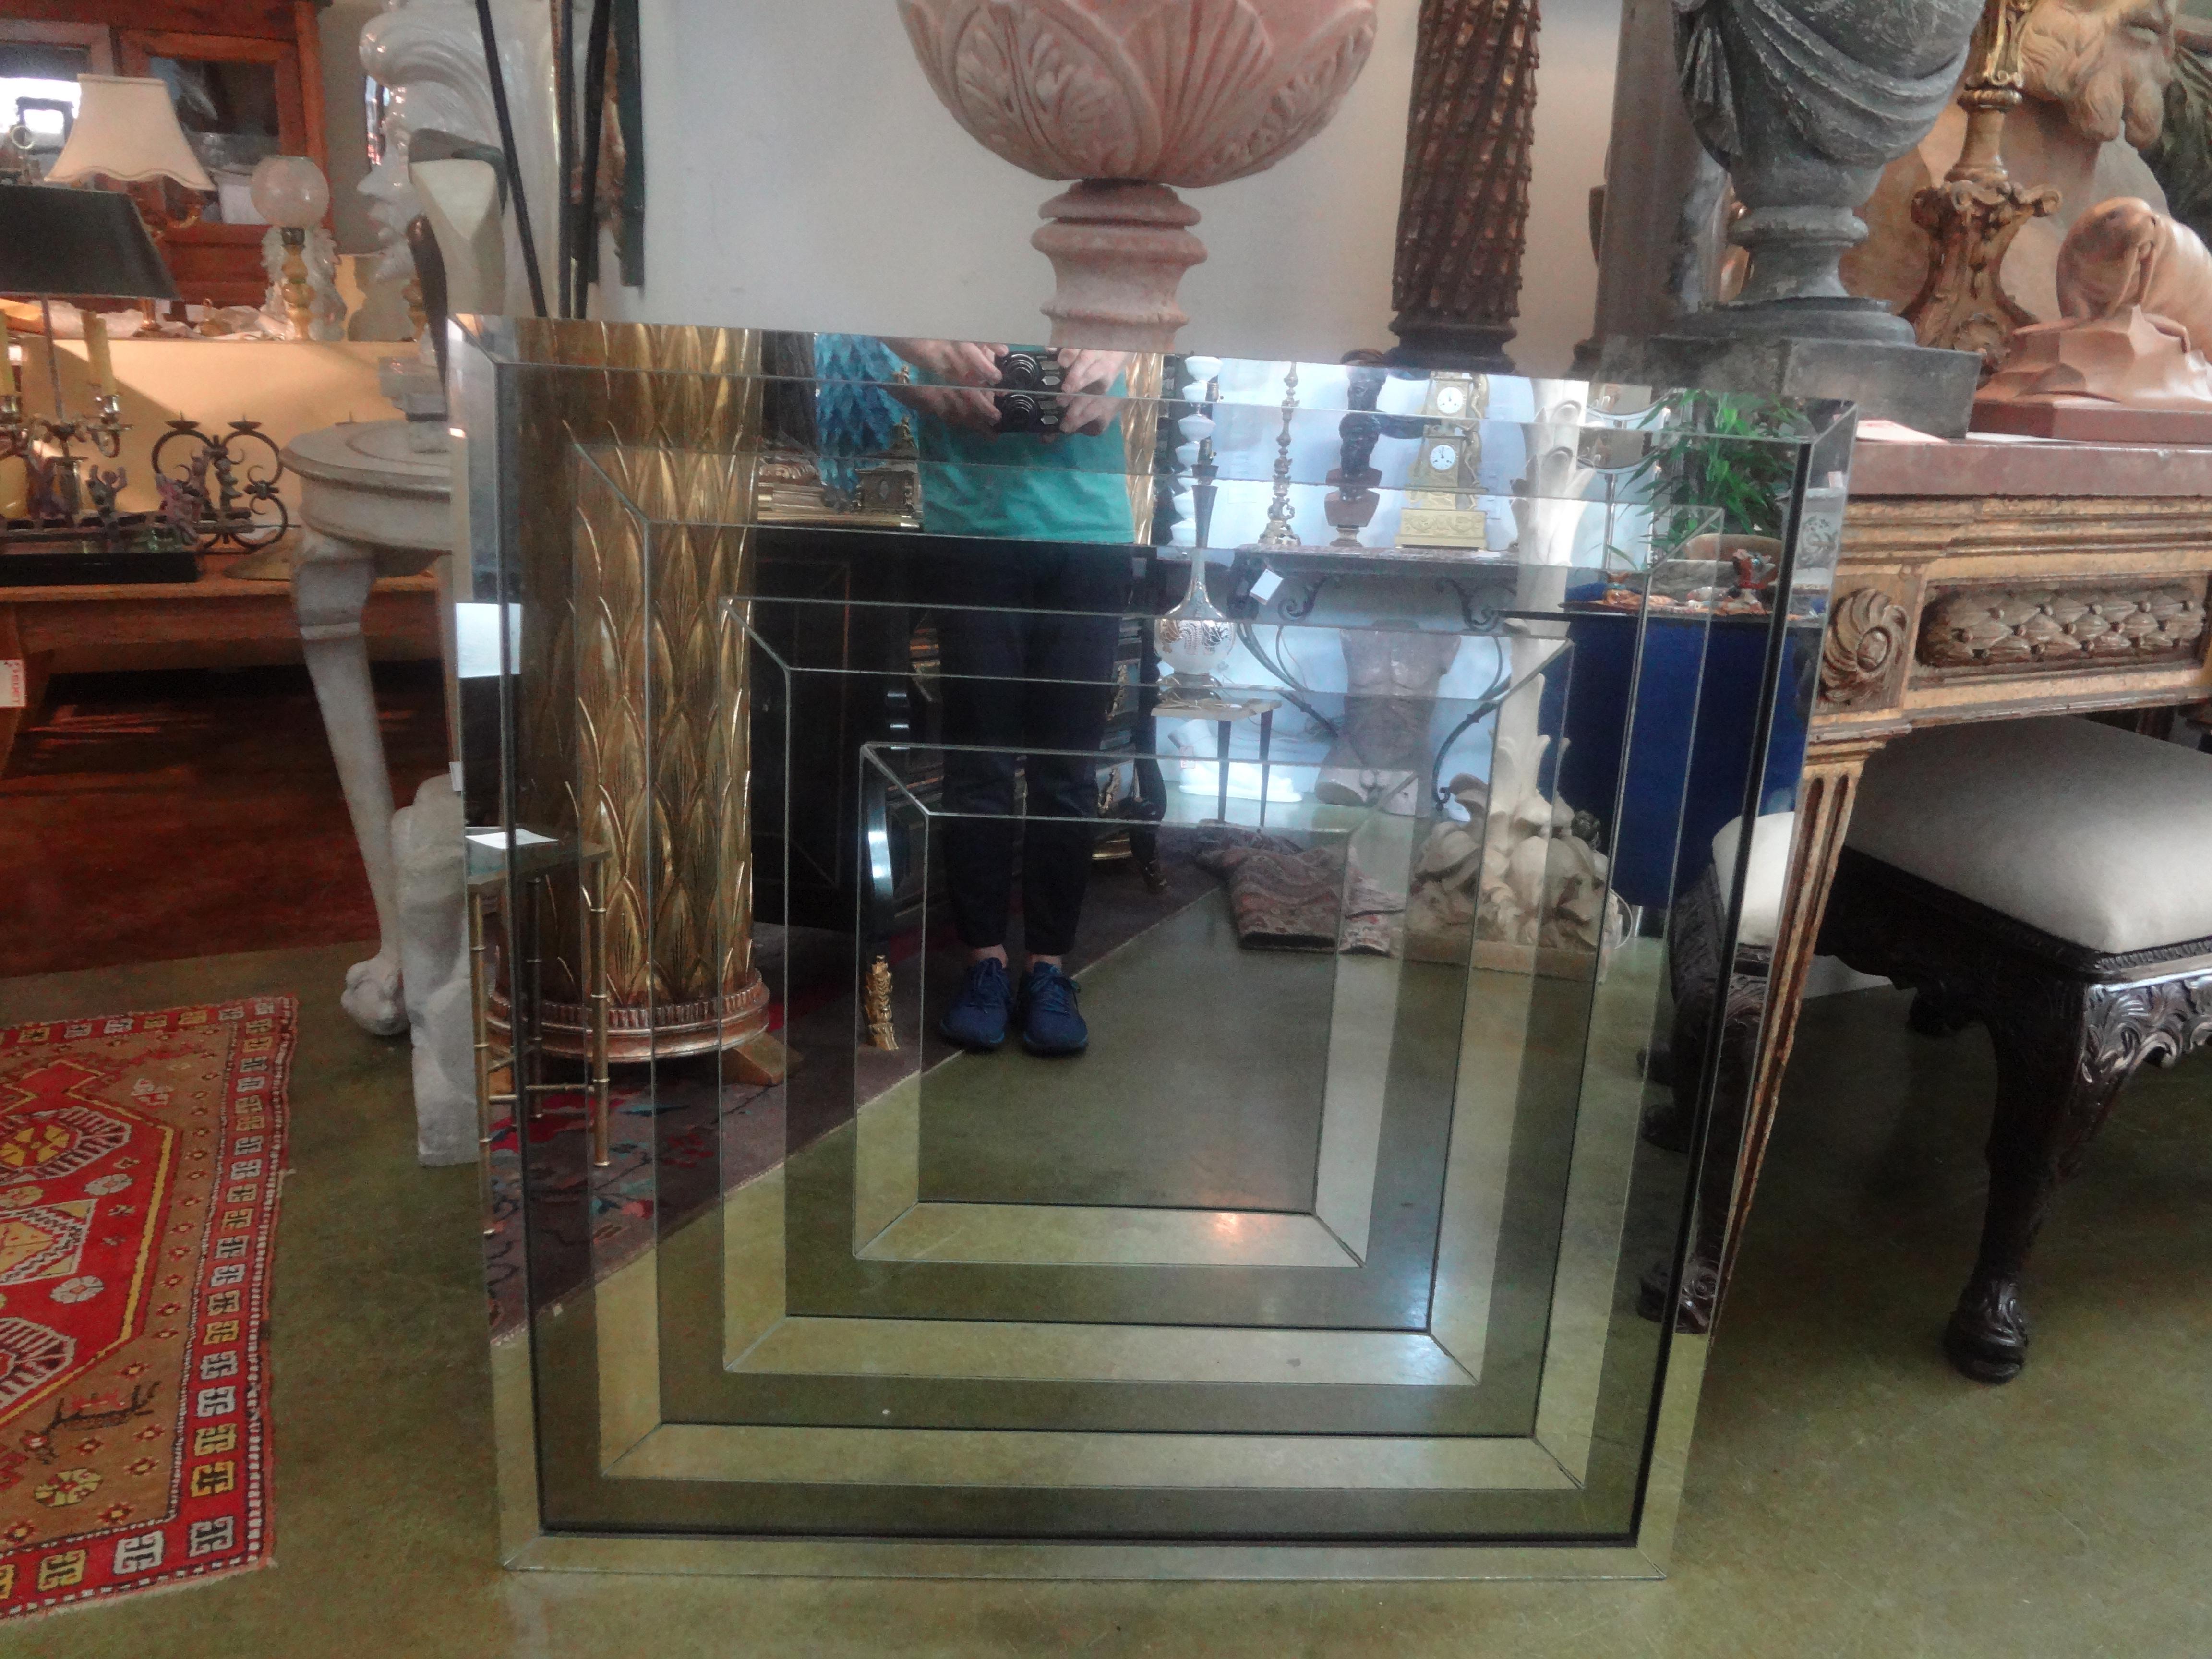 Mid Century Modern Geometrischer Spiegel.
Dieser atemberaubende quadratische Vintage-Spiegel hat ein unendliches Design mit abwechselnd silbernen und bronzenen Spiegelflächen. Tolles Design/One!